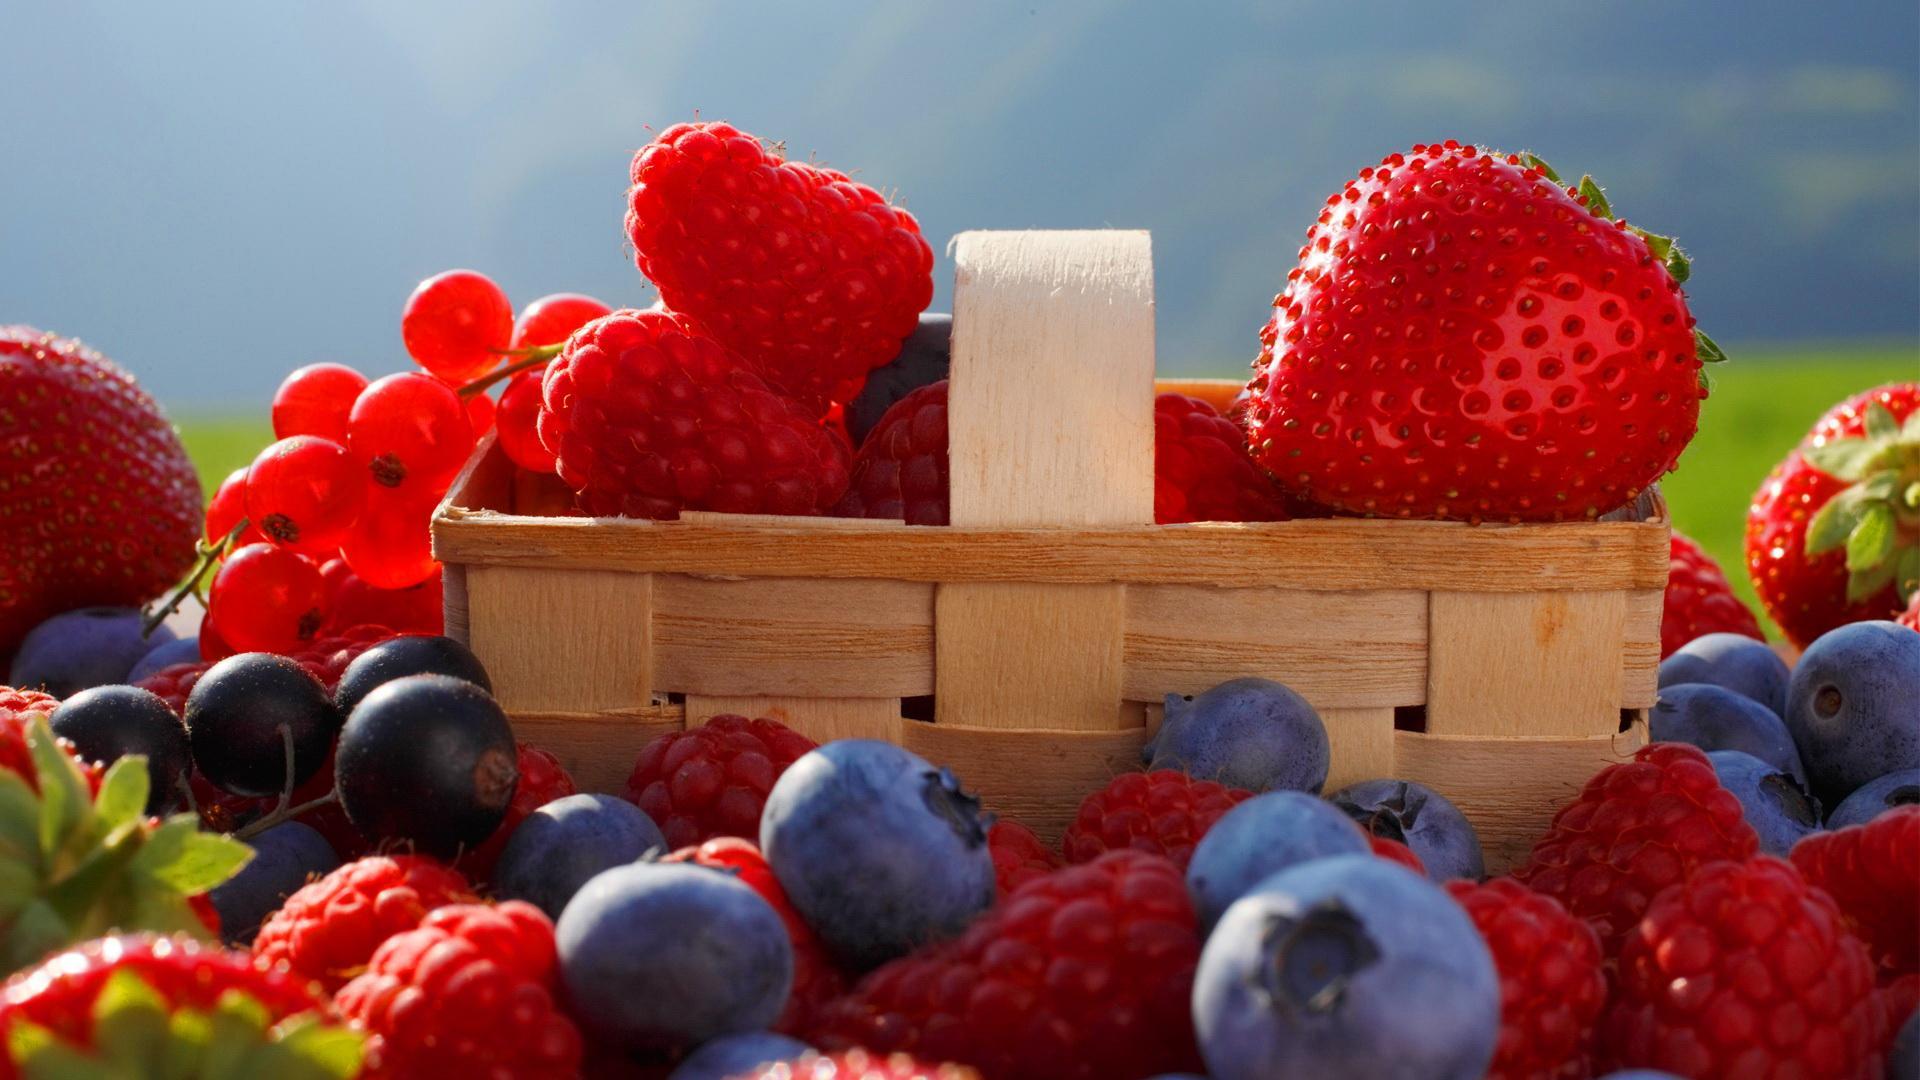 wallpaper buah segar,natural foods,berry,fruit,frutti di bosco,food